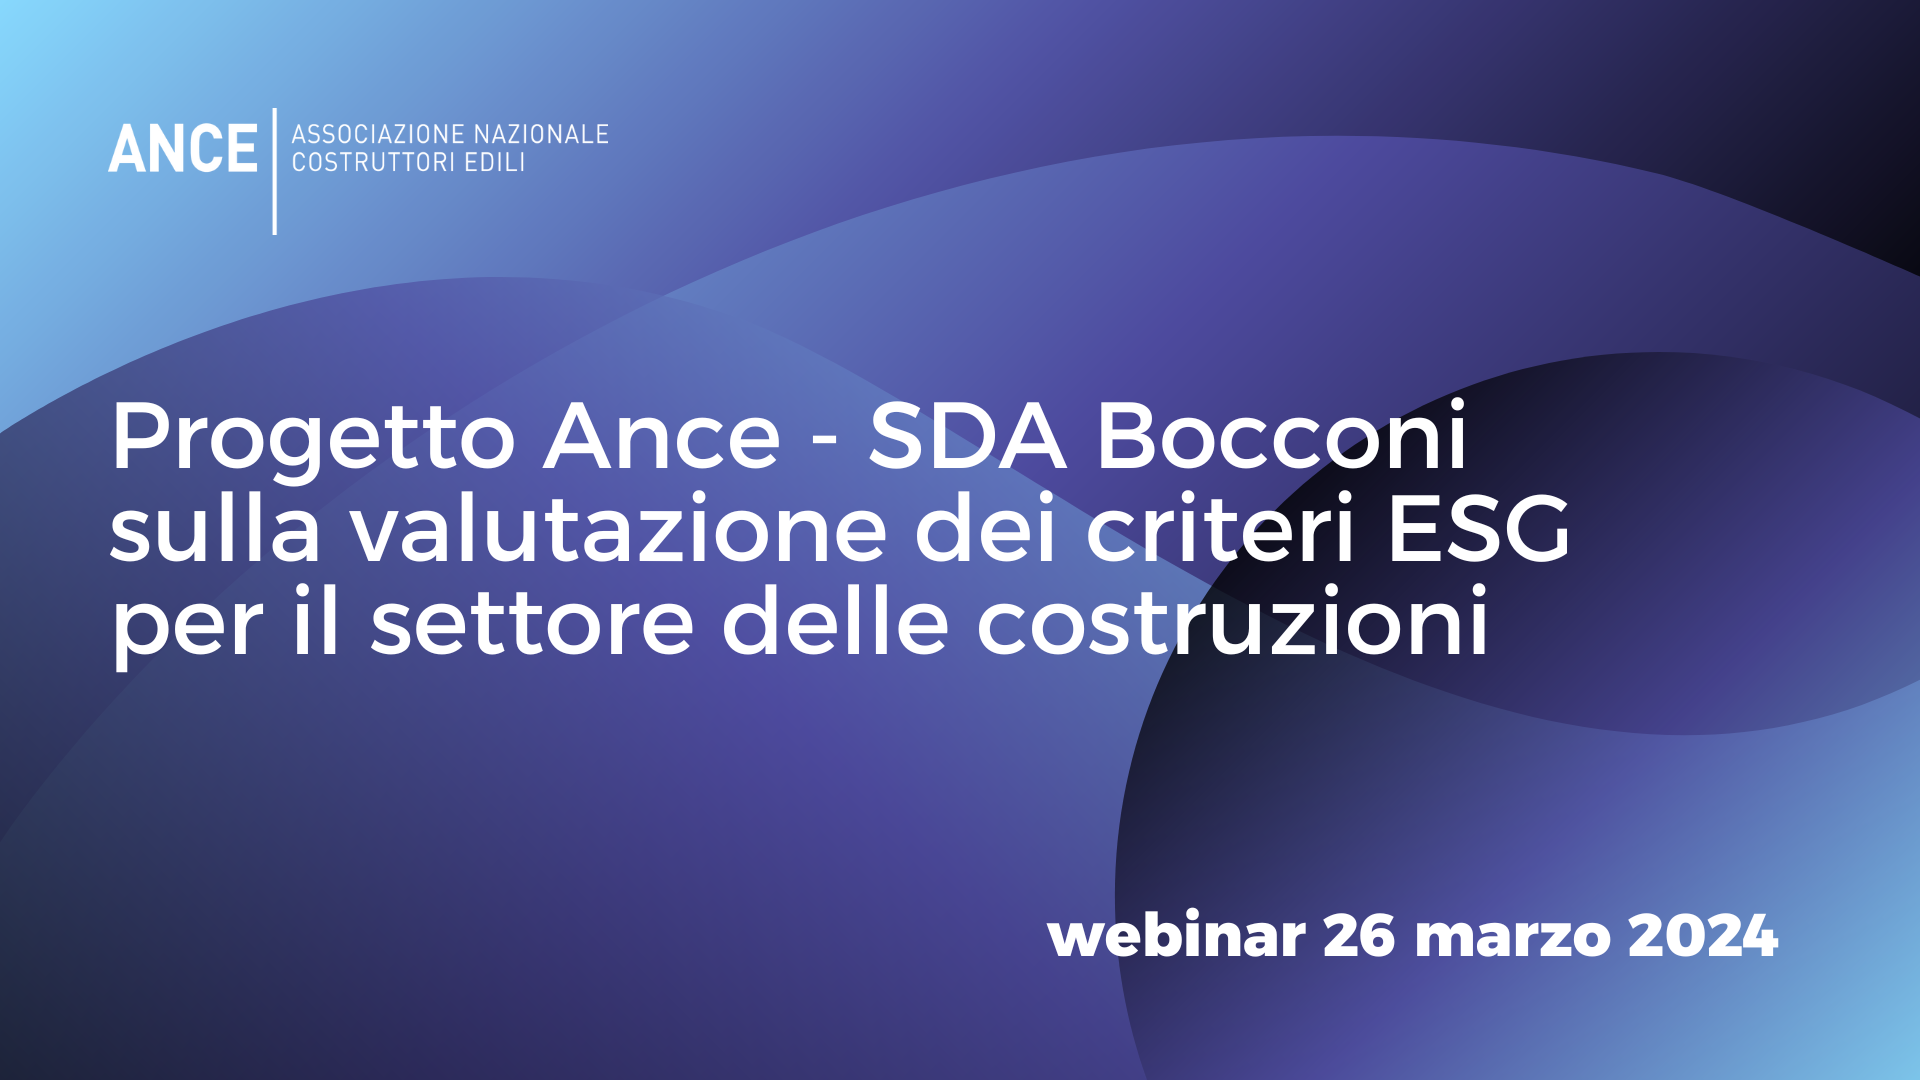 ESG: Ance ha presentato il nuovo progetto in collaborazione con SDA Bocconi